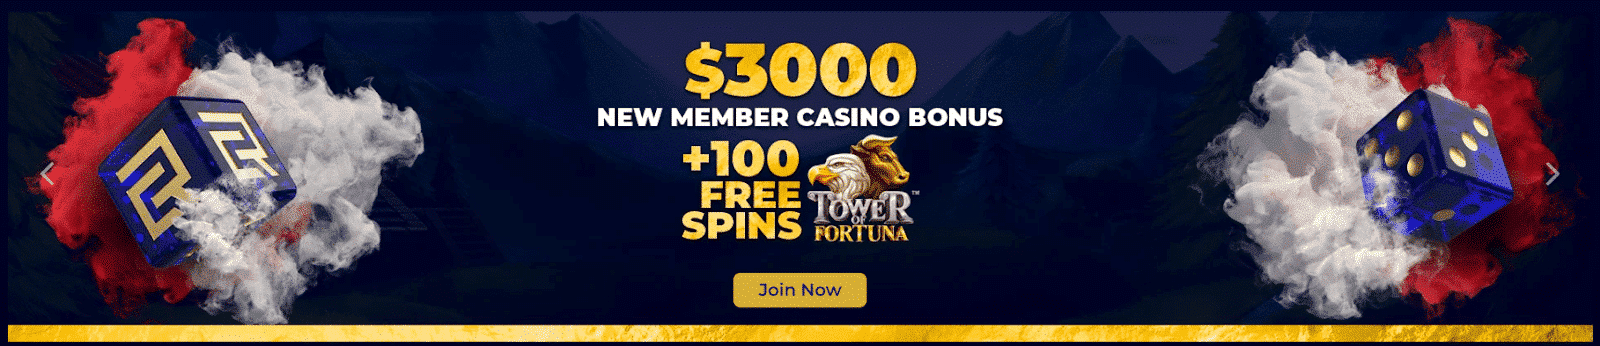 Club Riches Casino Bonuses